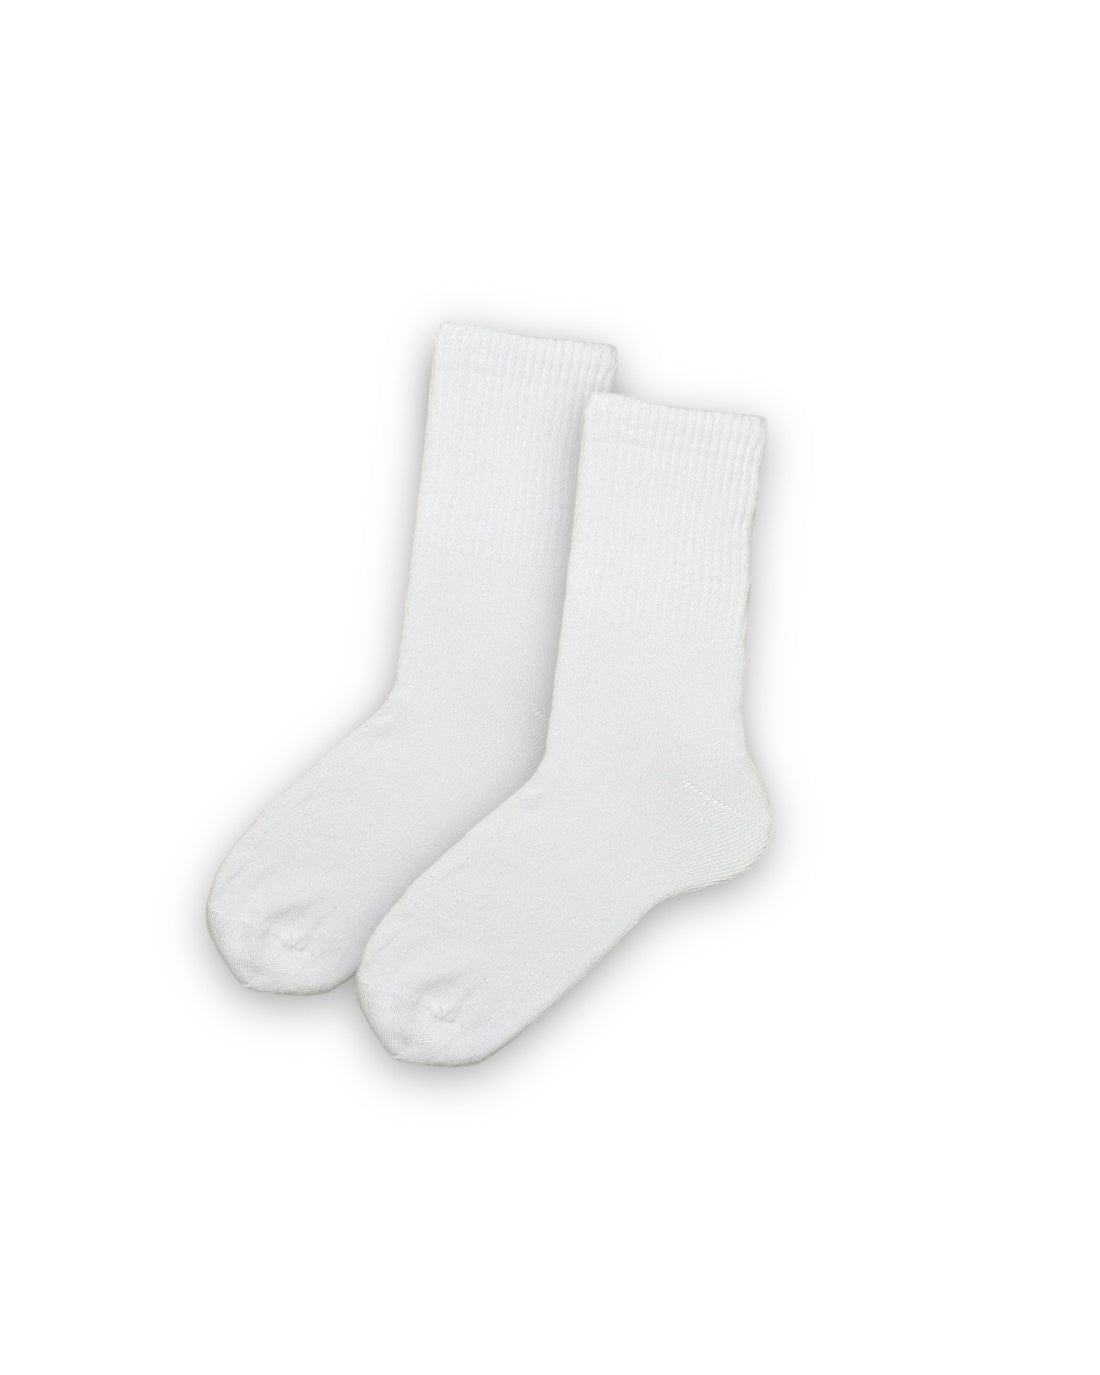 Düz Beyaz Unisex Çorap